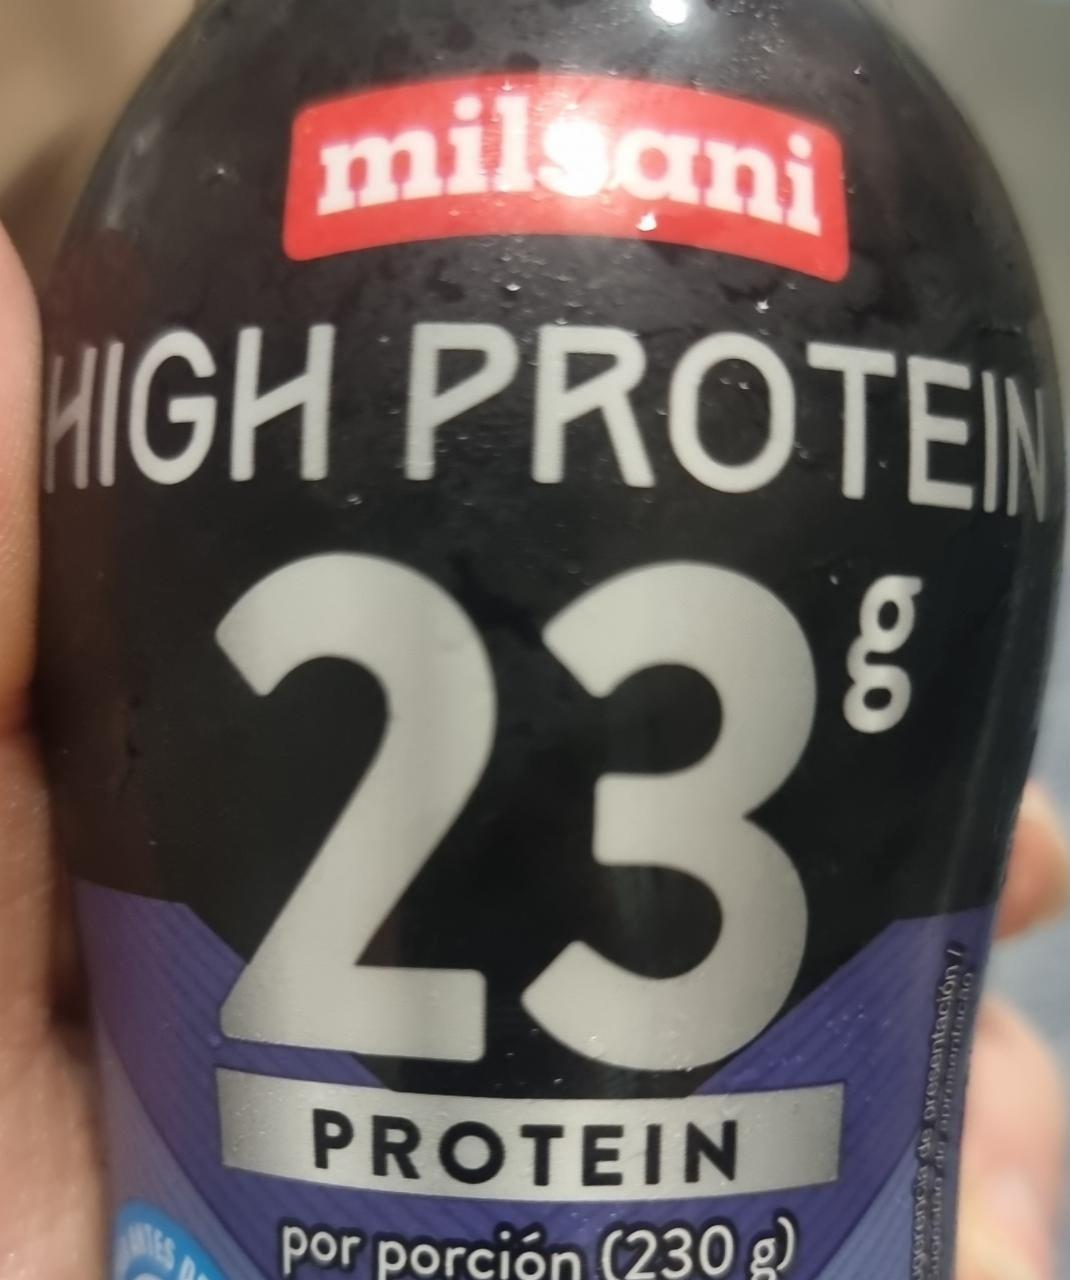 Fotografie - High protein 23g protein Milsani